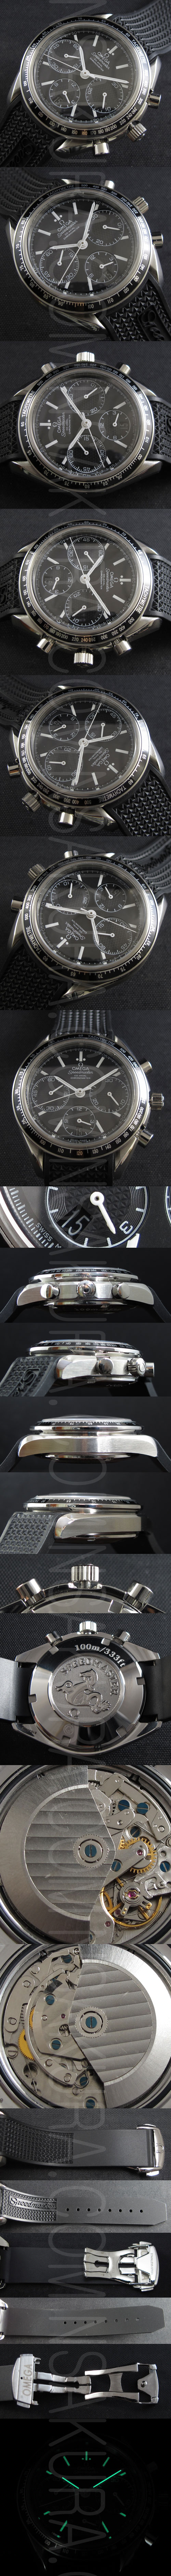 メンズ腕時計オメガ スピードマスター黒文字盤ブラックラバーバンド